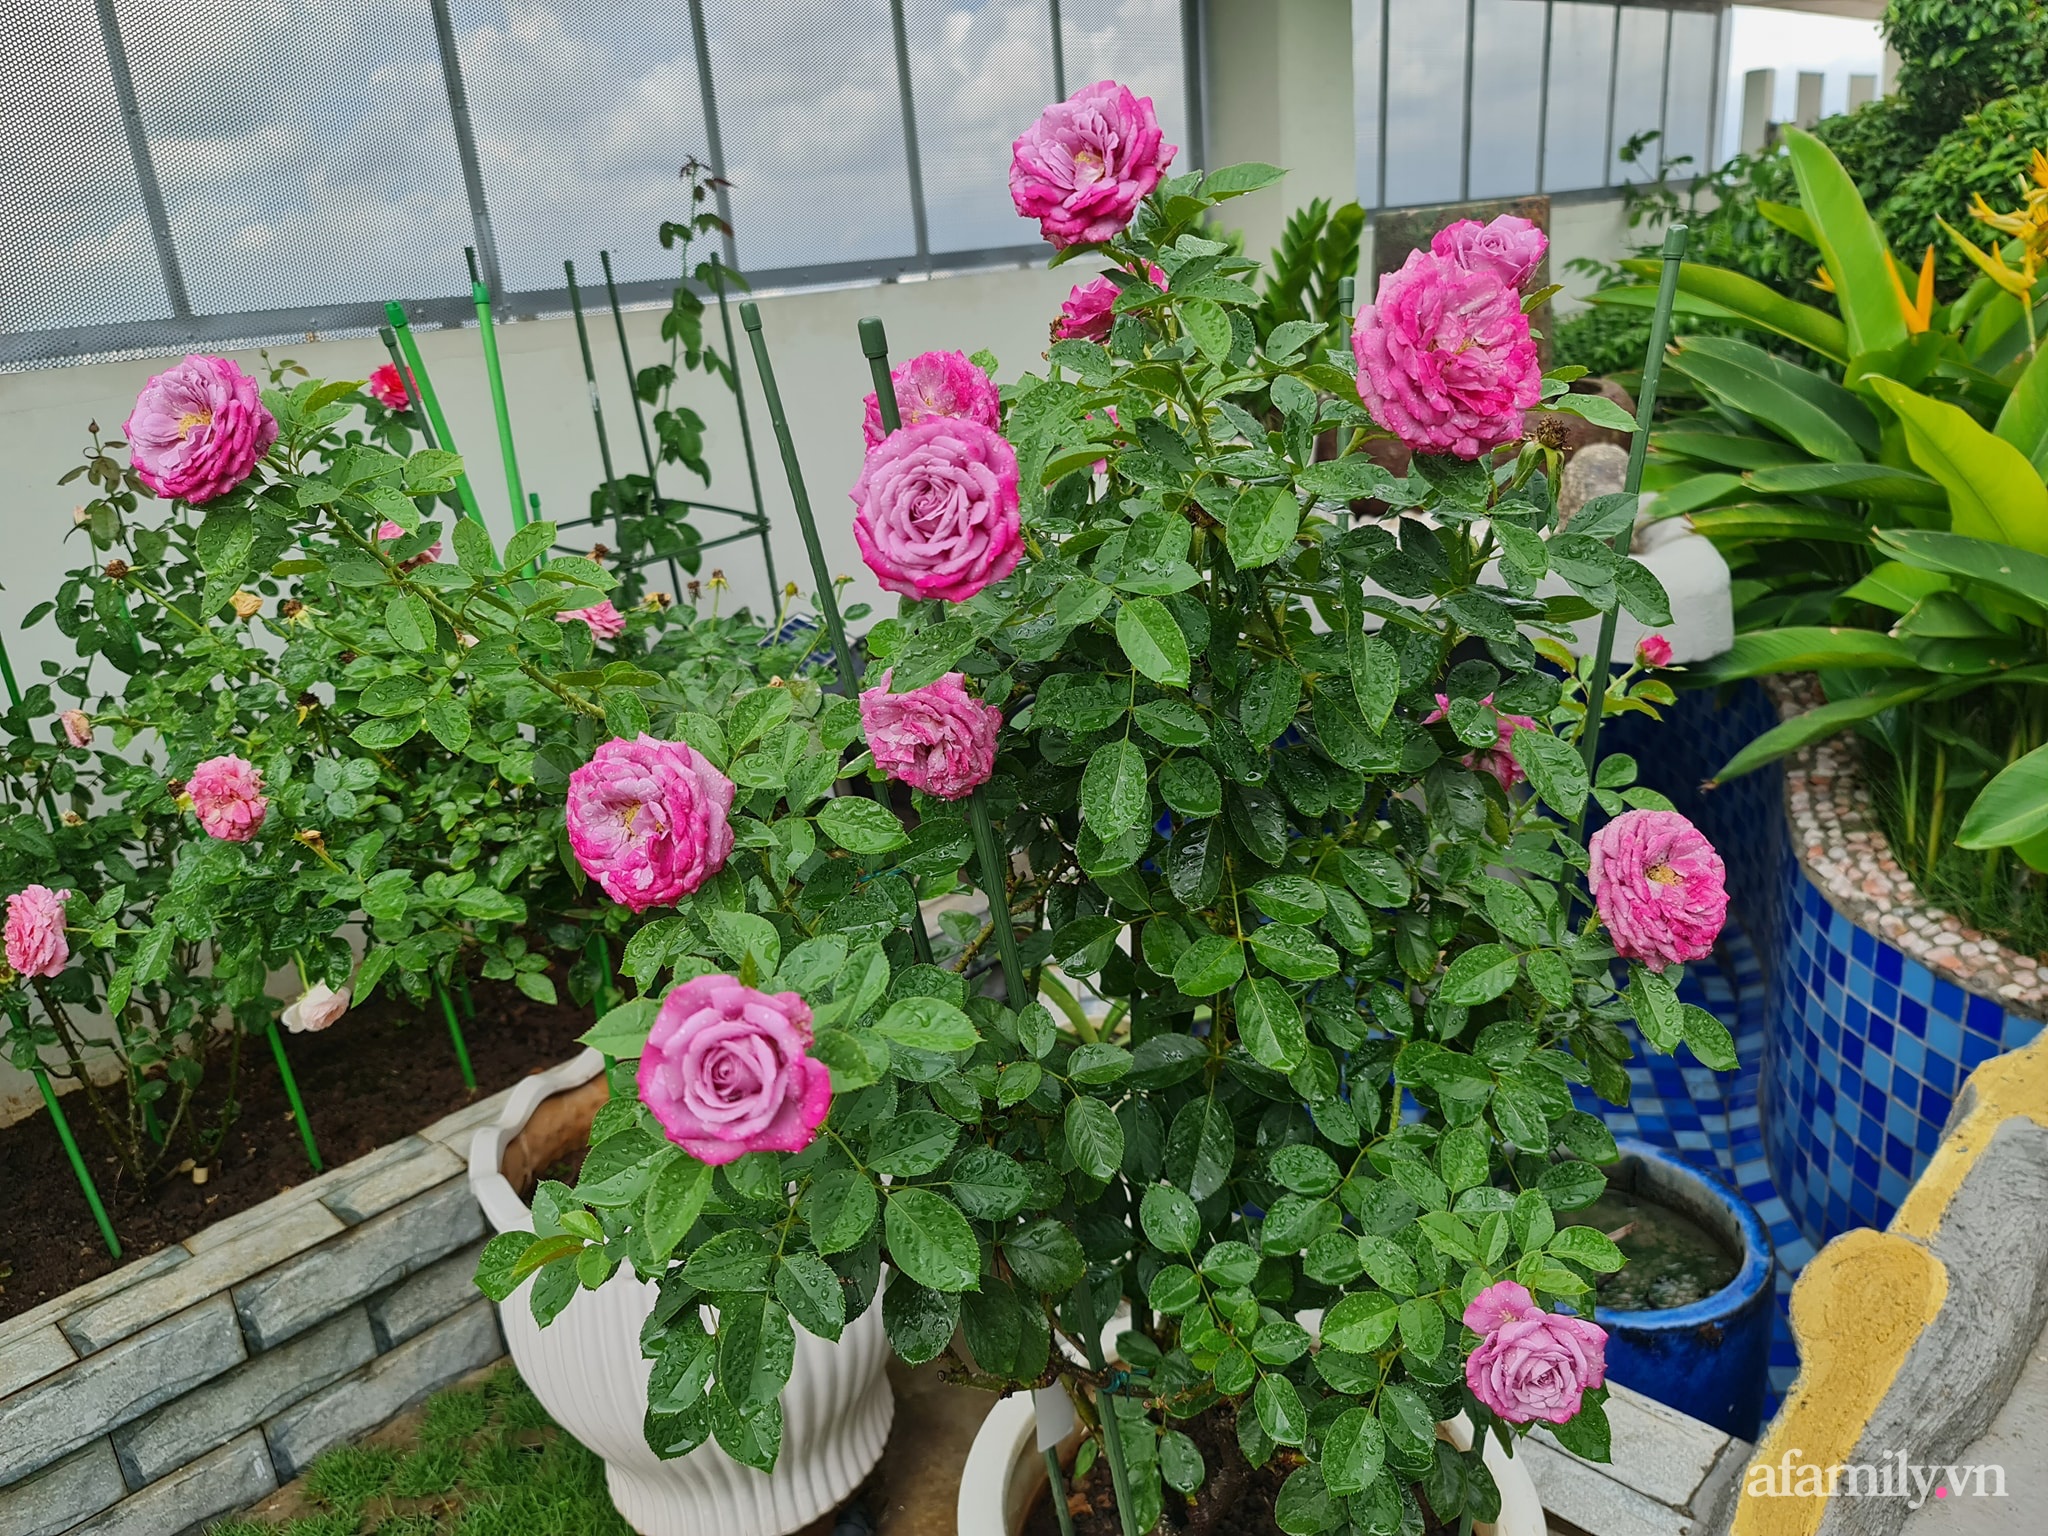 Đắm say trước vẻ đẹp ngọt lịm tim của vườn hồng rực rỡ trên sân thượng ở Bình Dương - Ảnh 11.